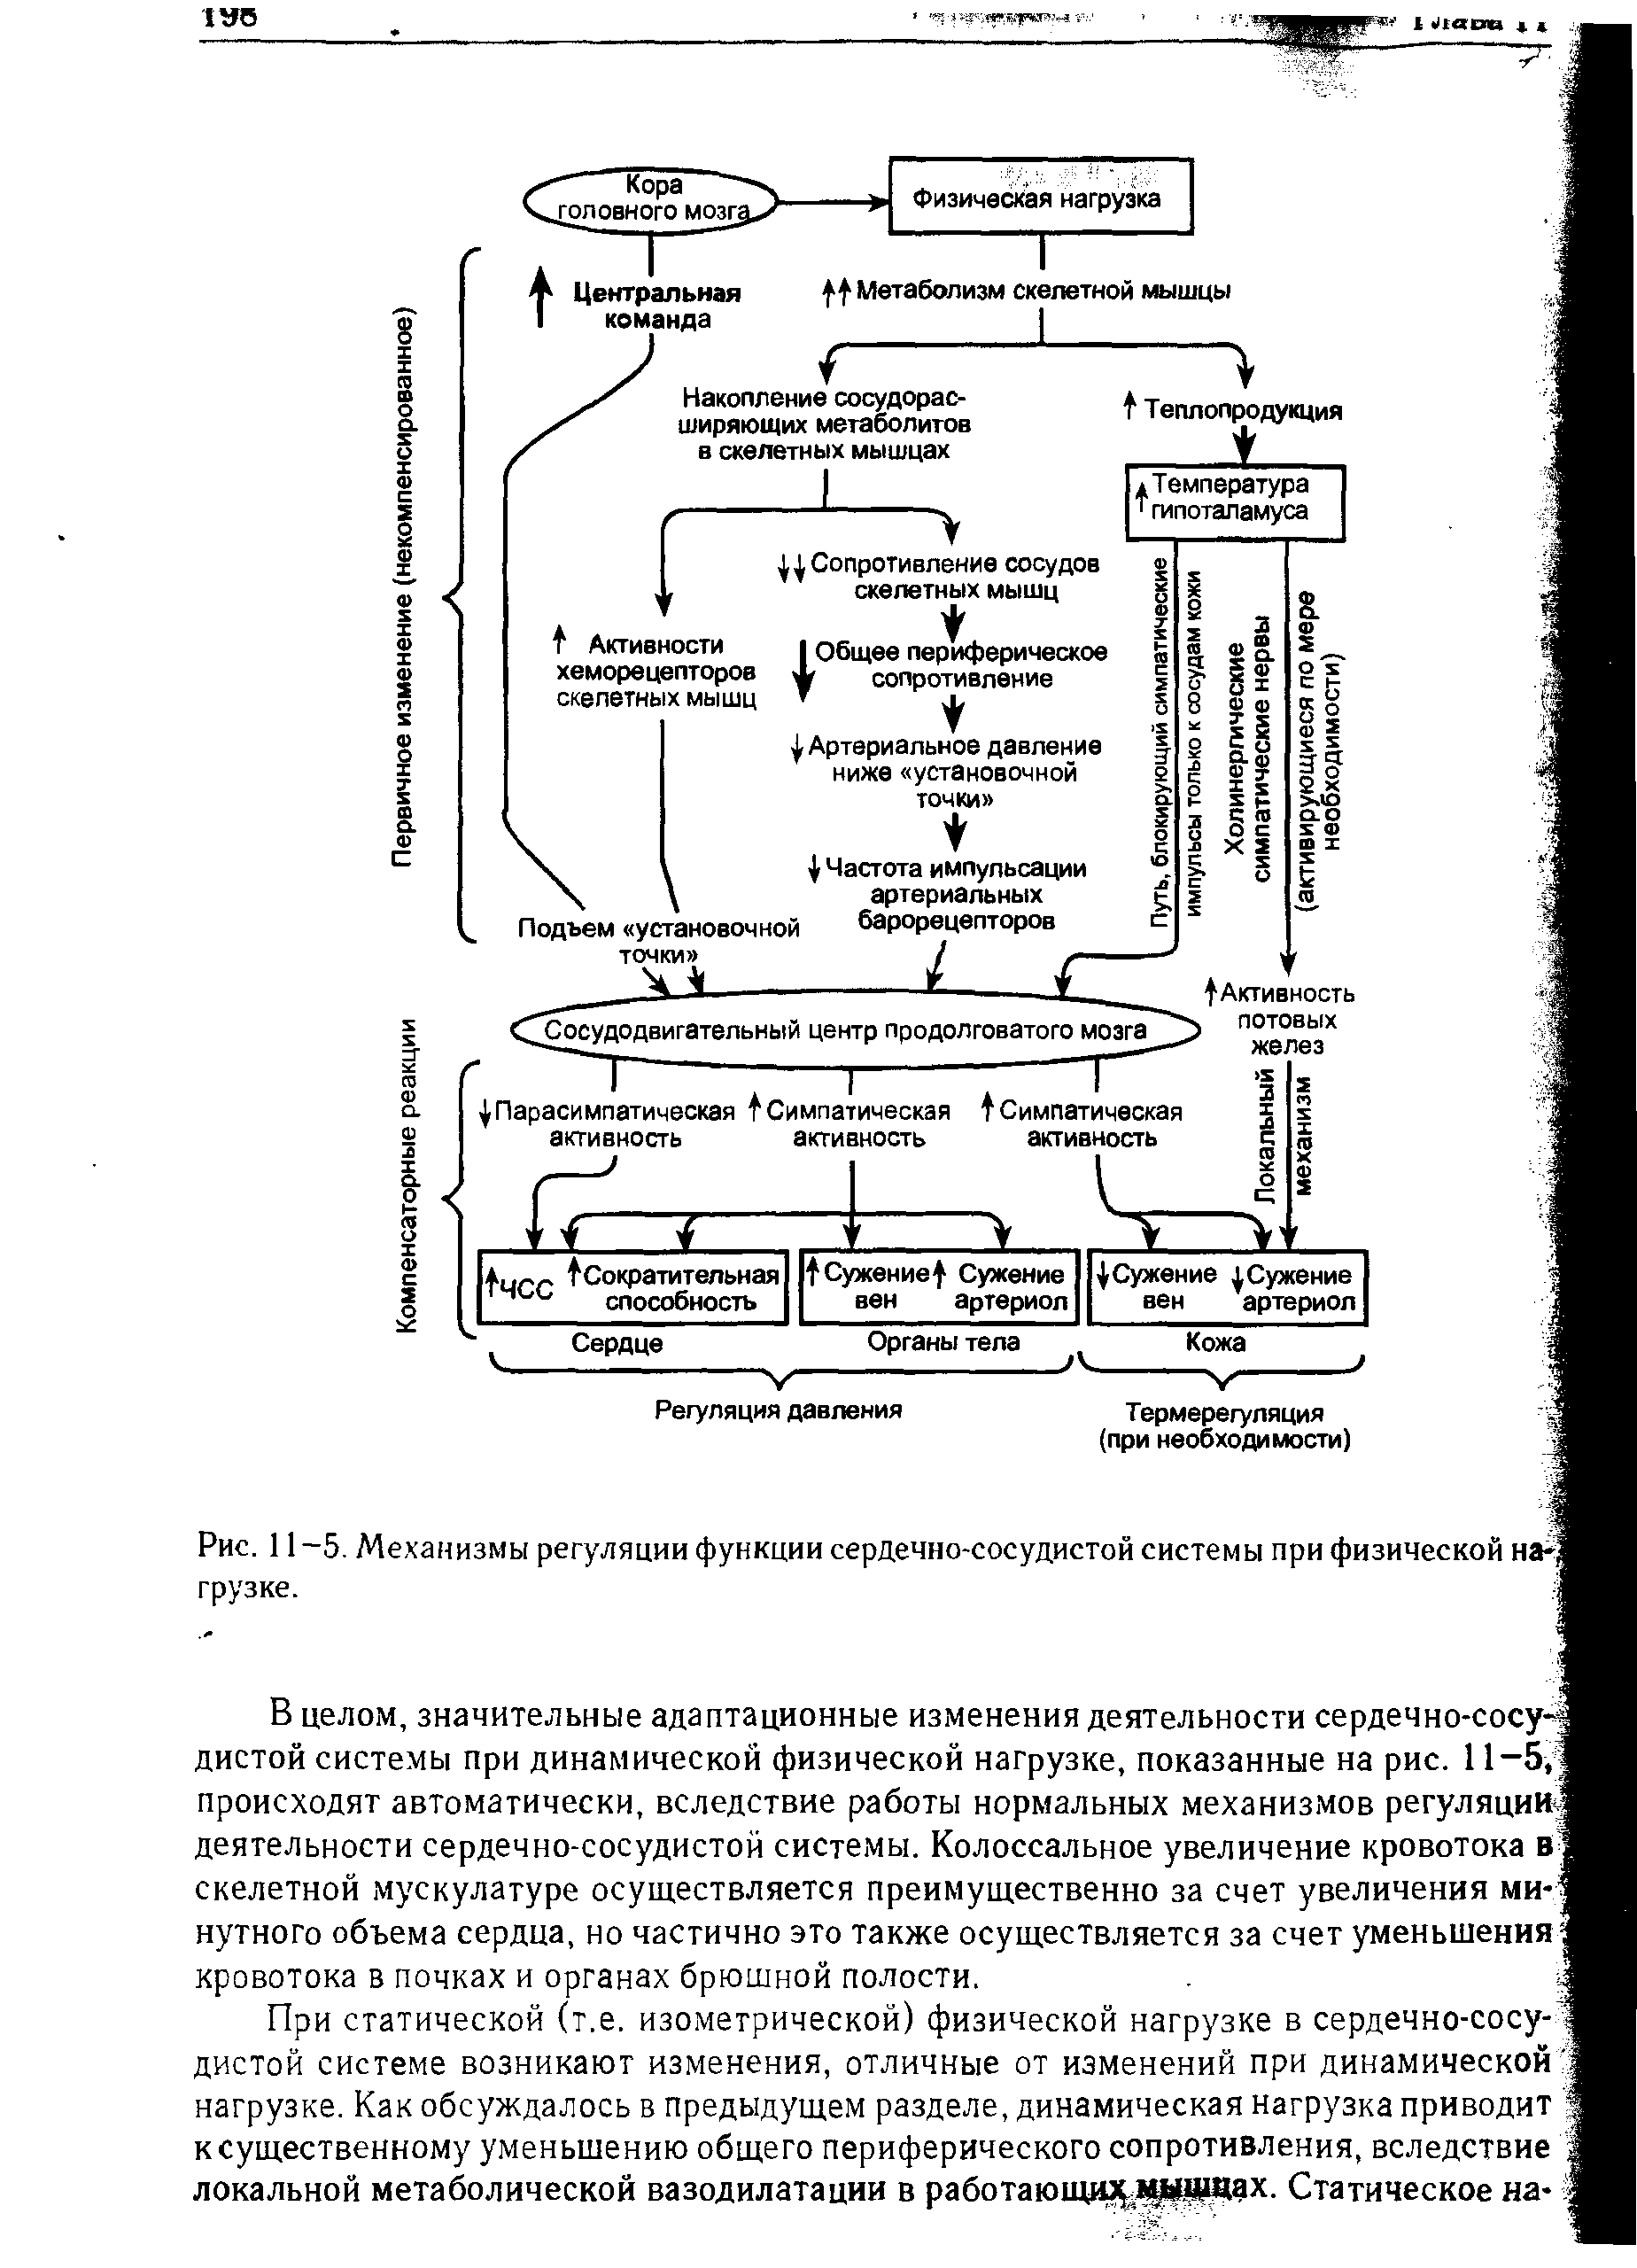 Рис. 11-5. Механизмы регуляции функции сердечно-сосудистой системы при физической наг грузке.